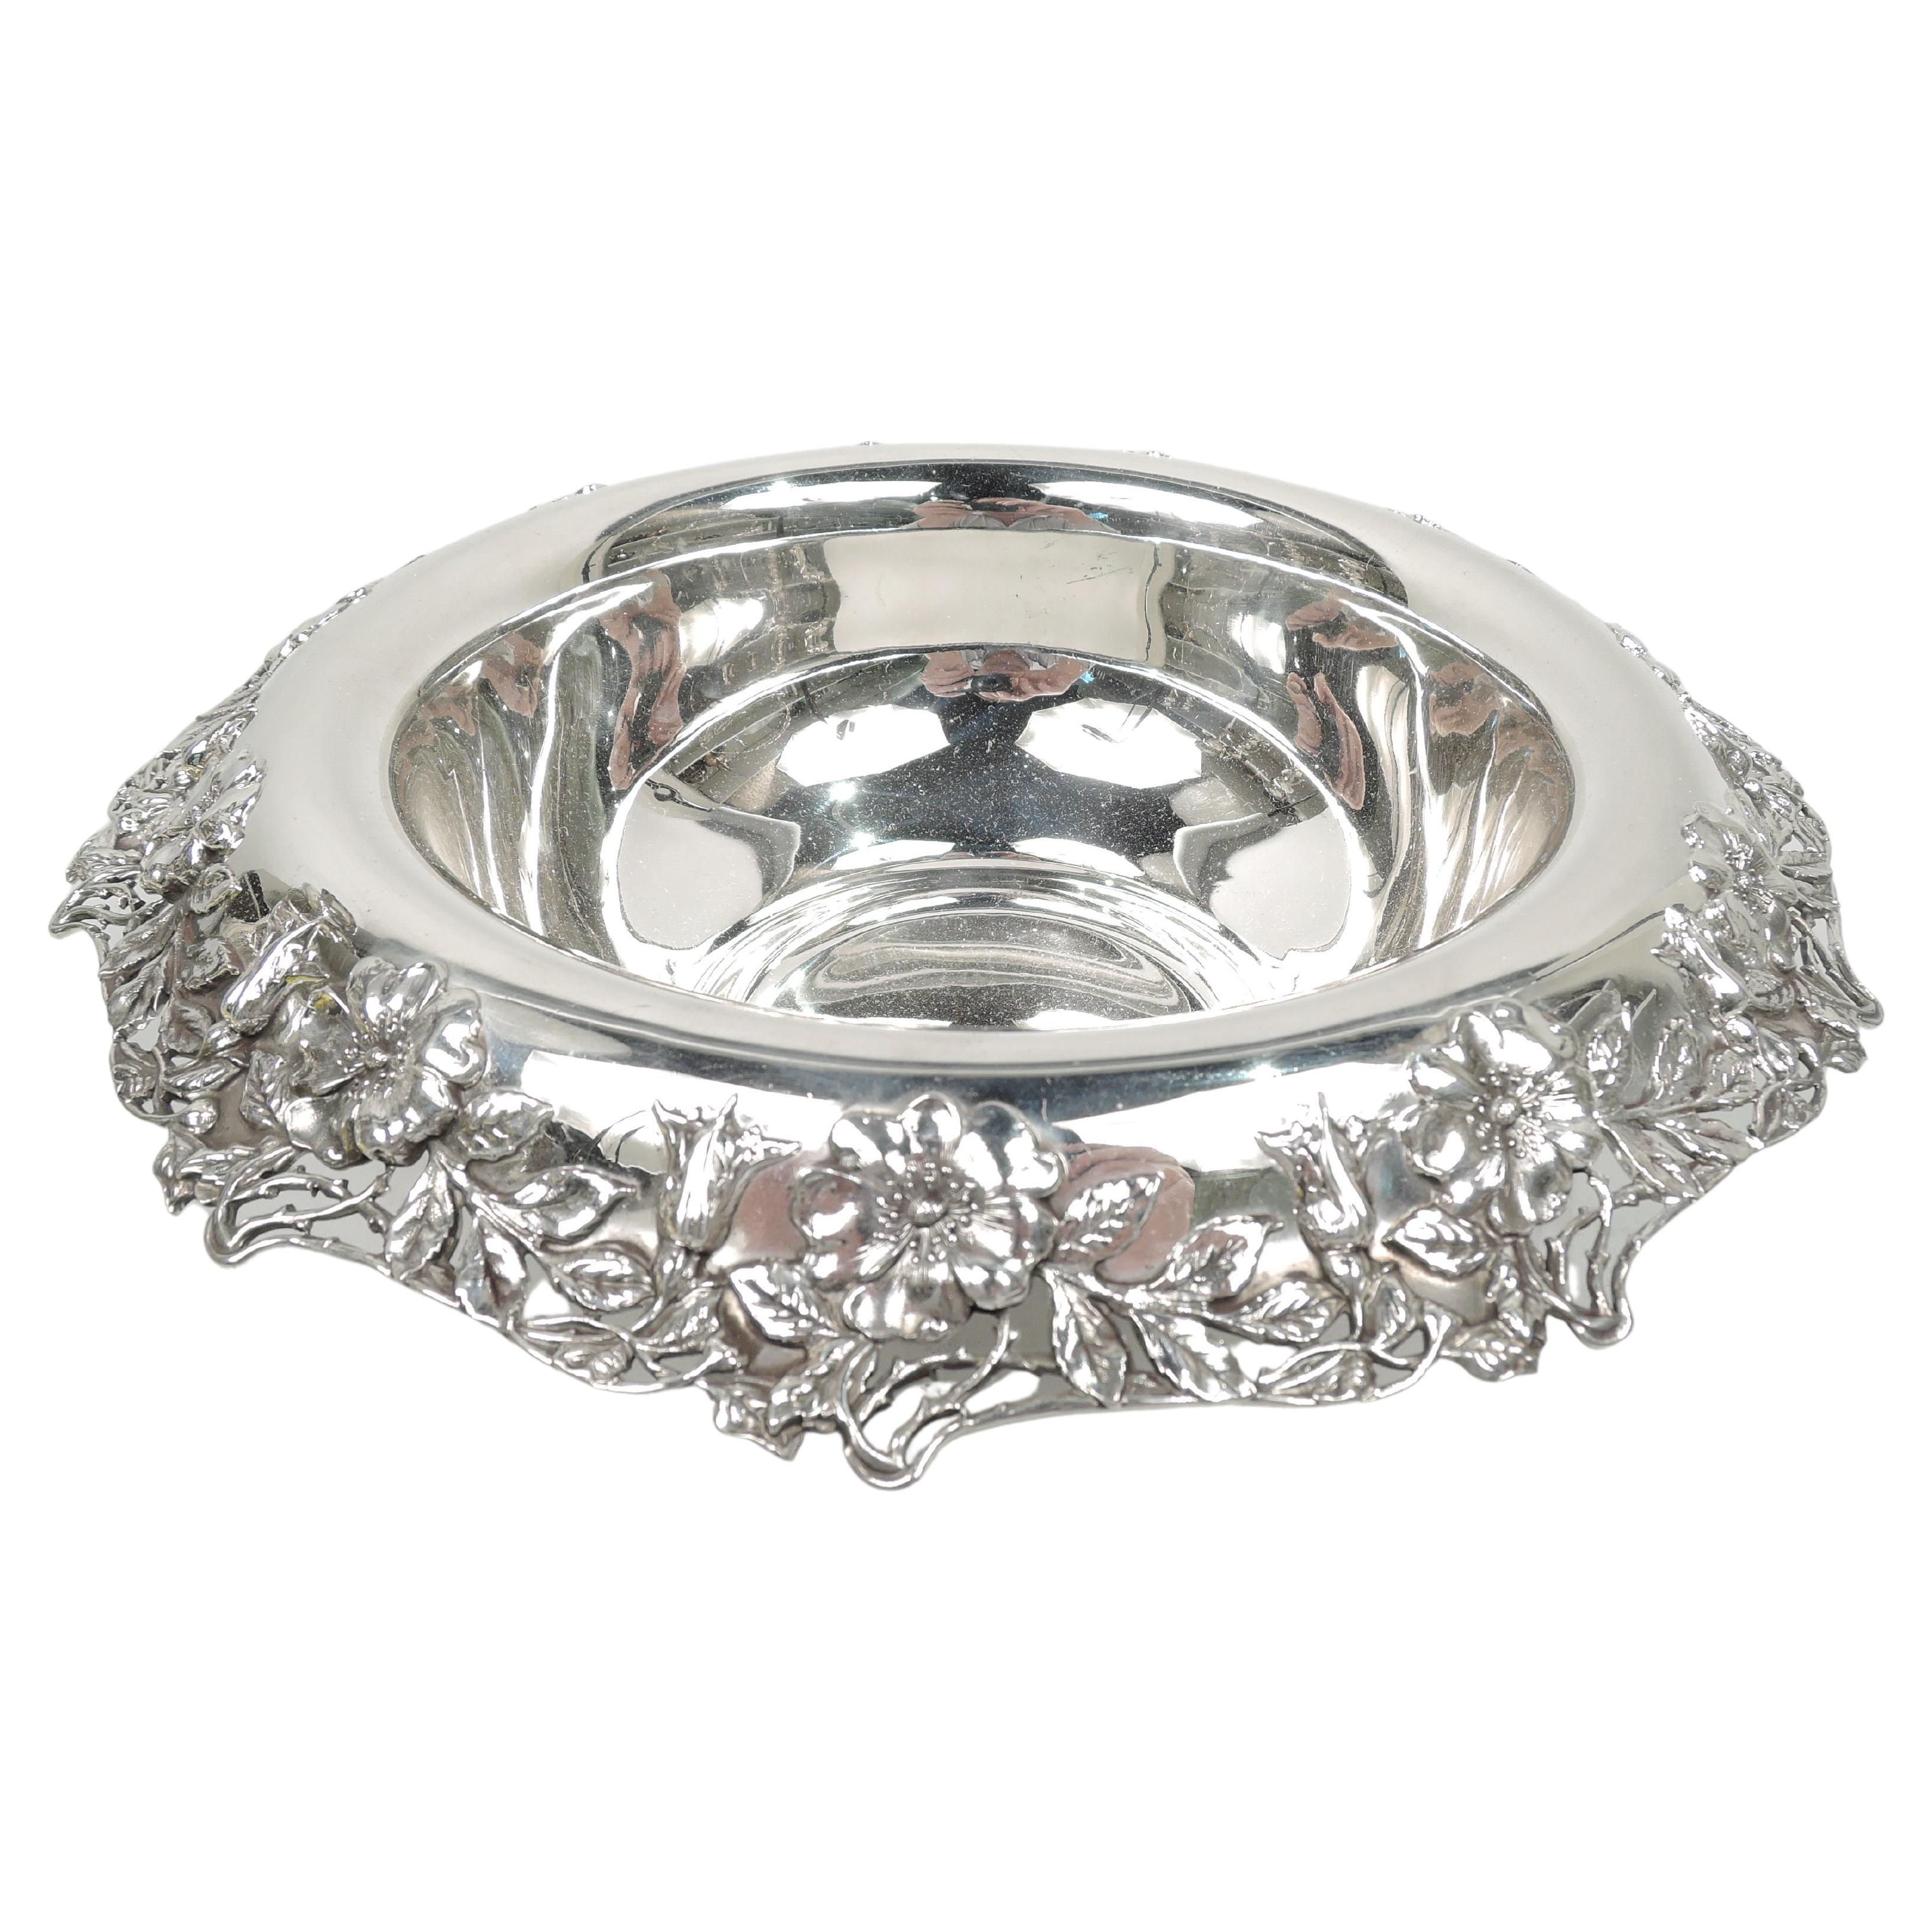 Antique Tiffany & Co. Art Nouveau Sterling Silver Bowl